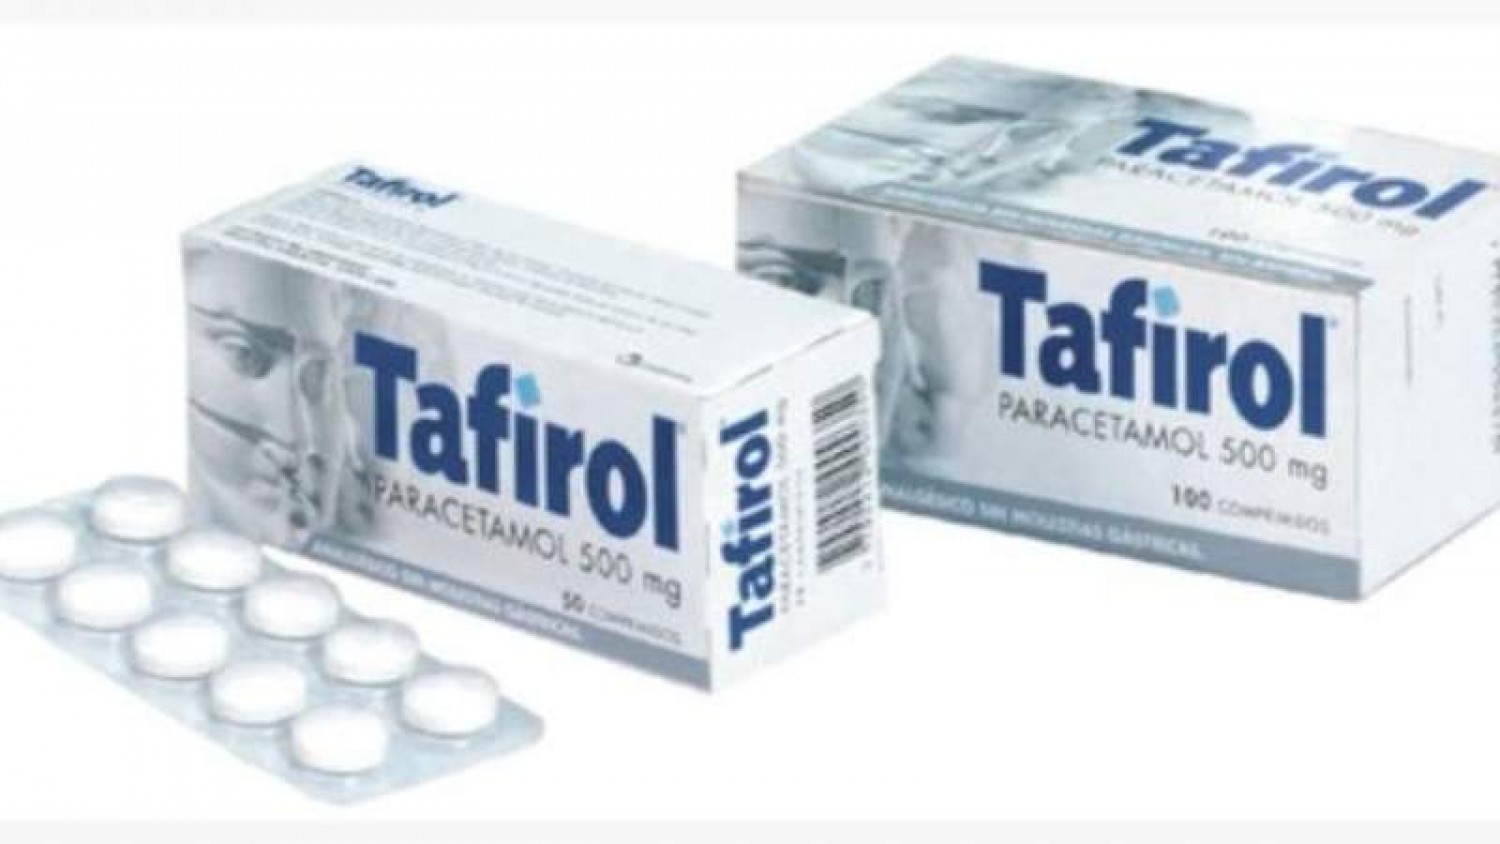 tafirol